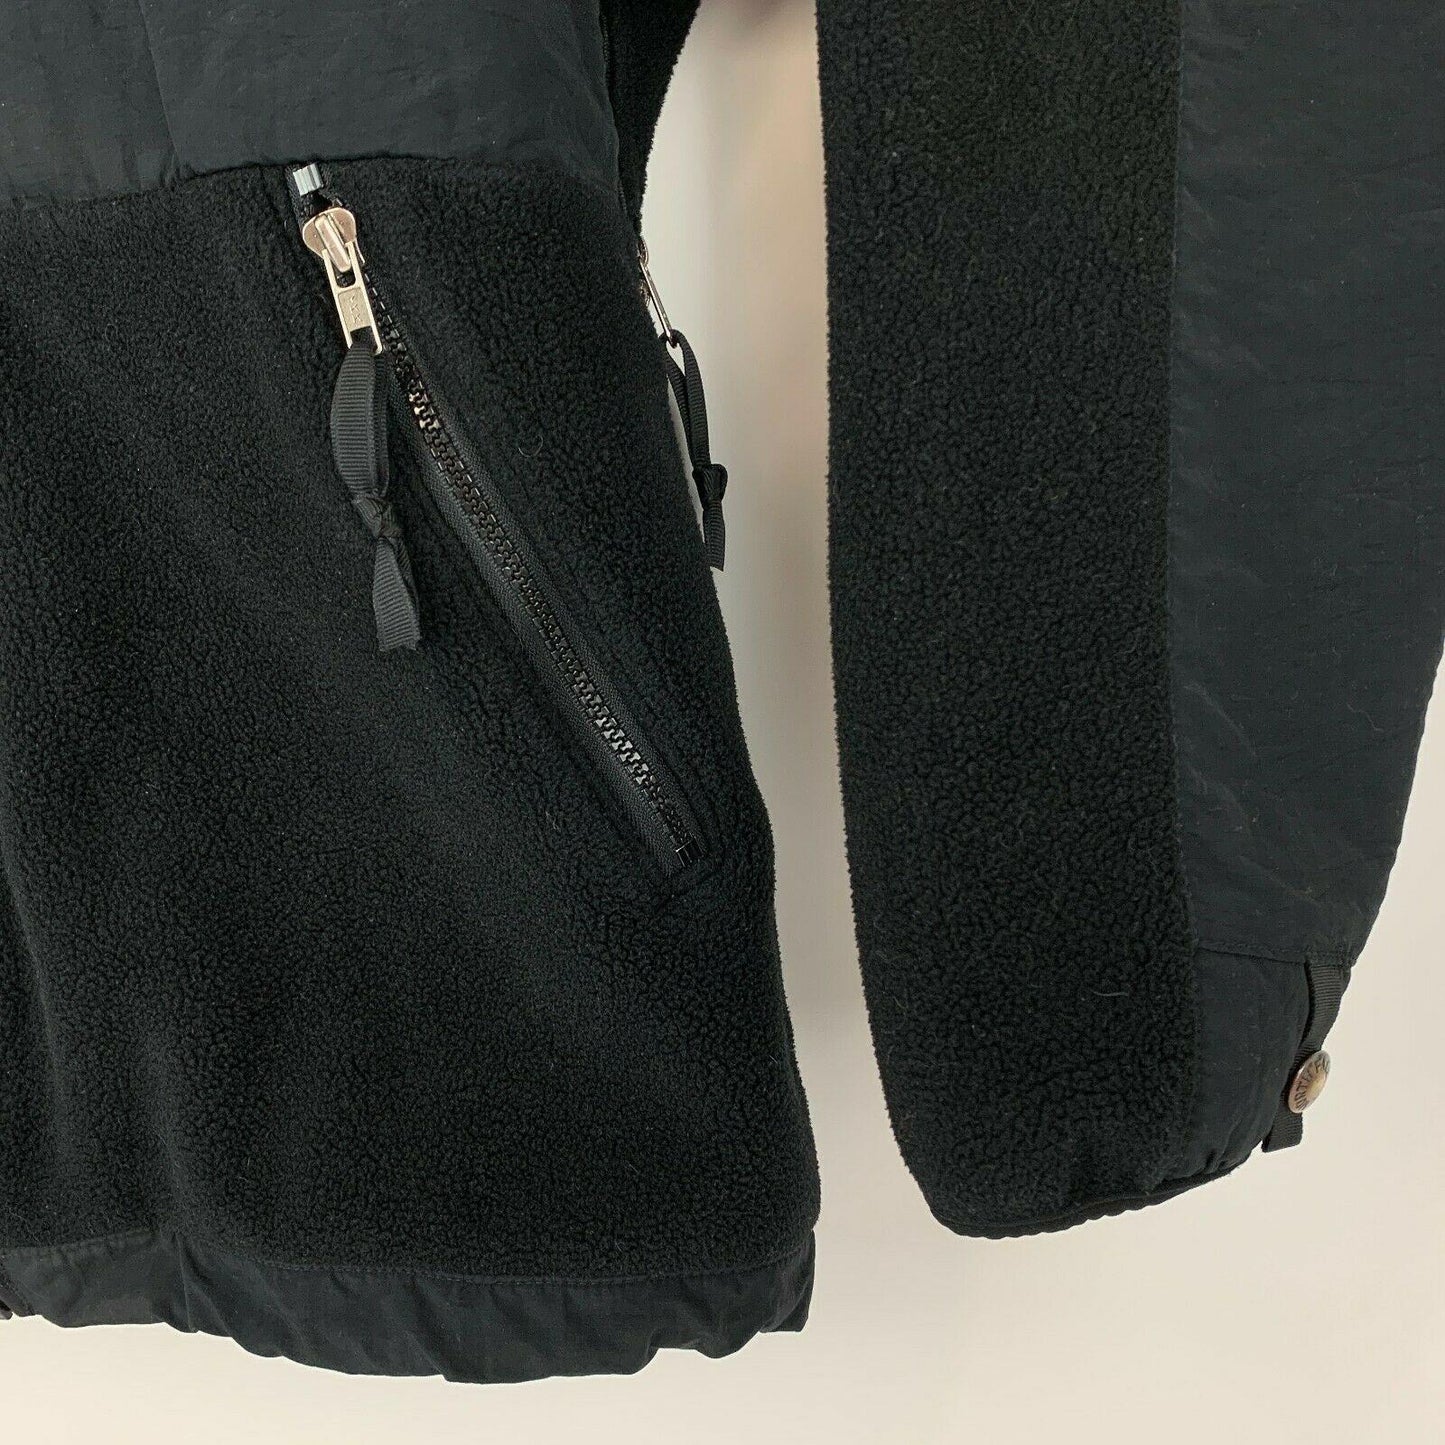 The North Face Denali Medium Fleece Jacket Black Pockets Full Zip Mock Neck